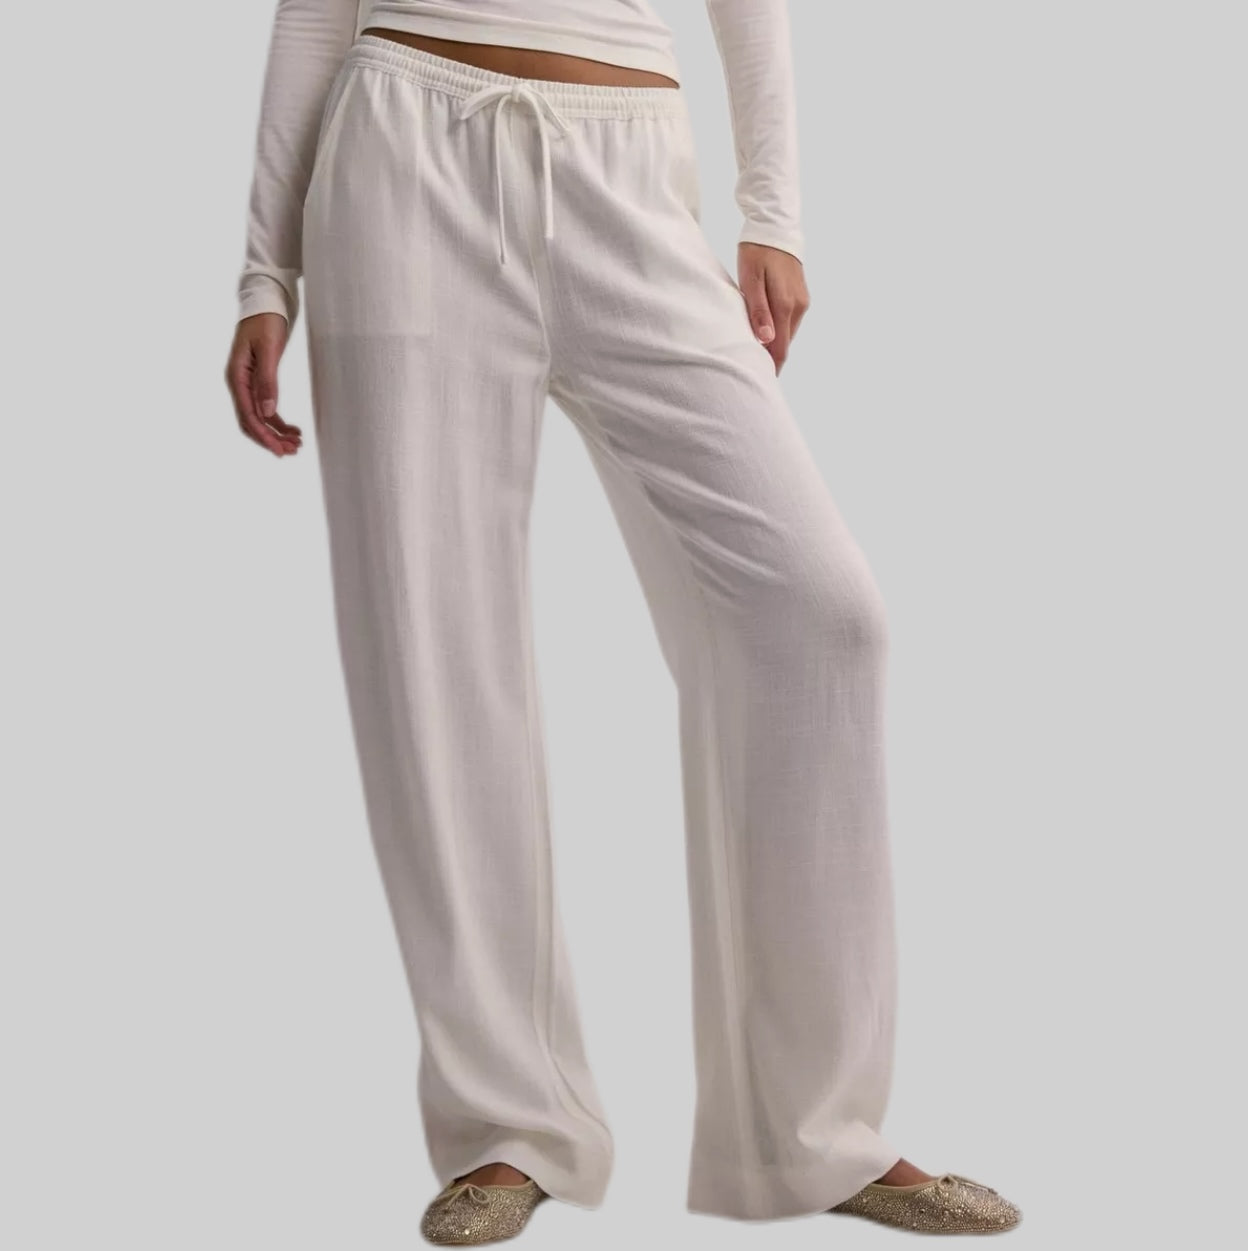 Nelly linen pants, women, white, frontsde, model